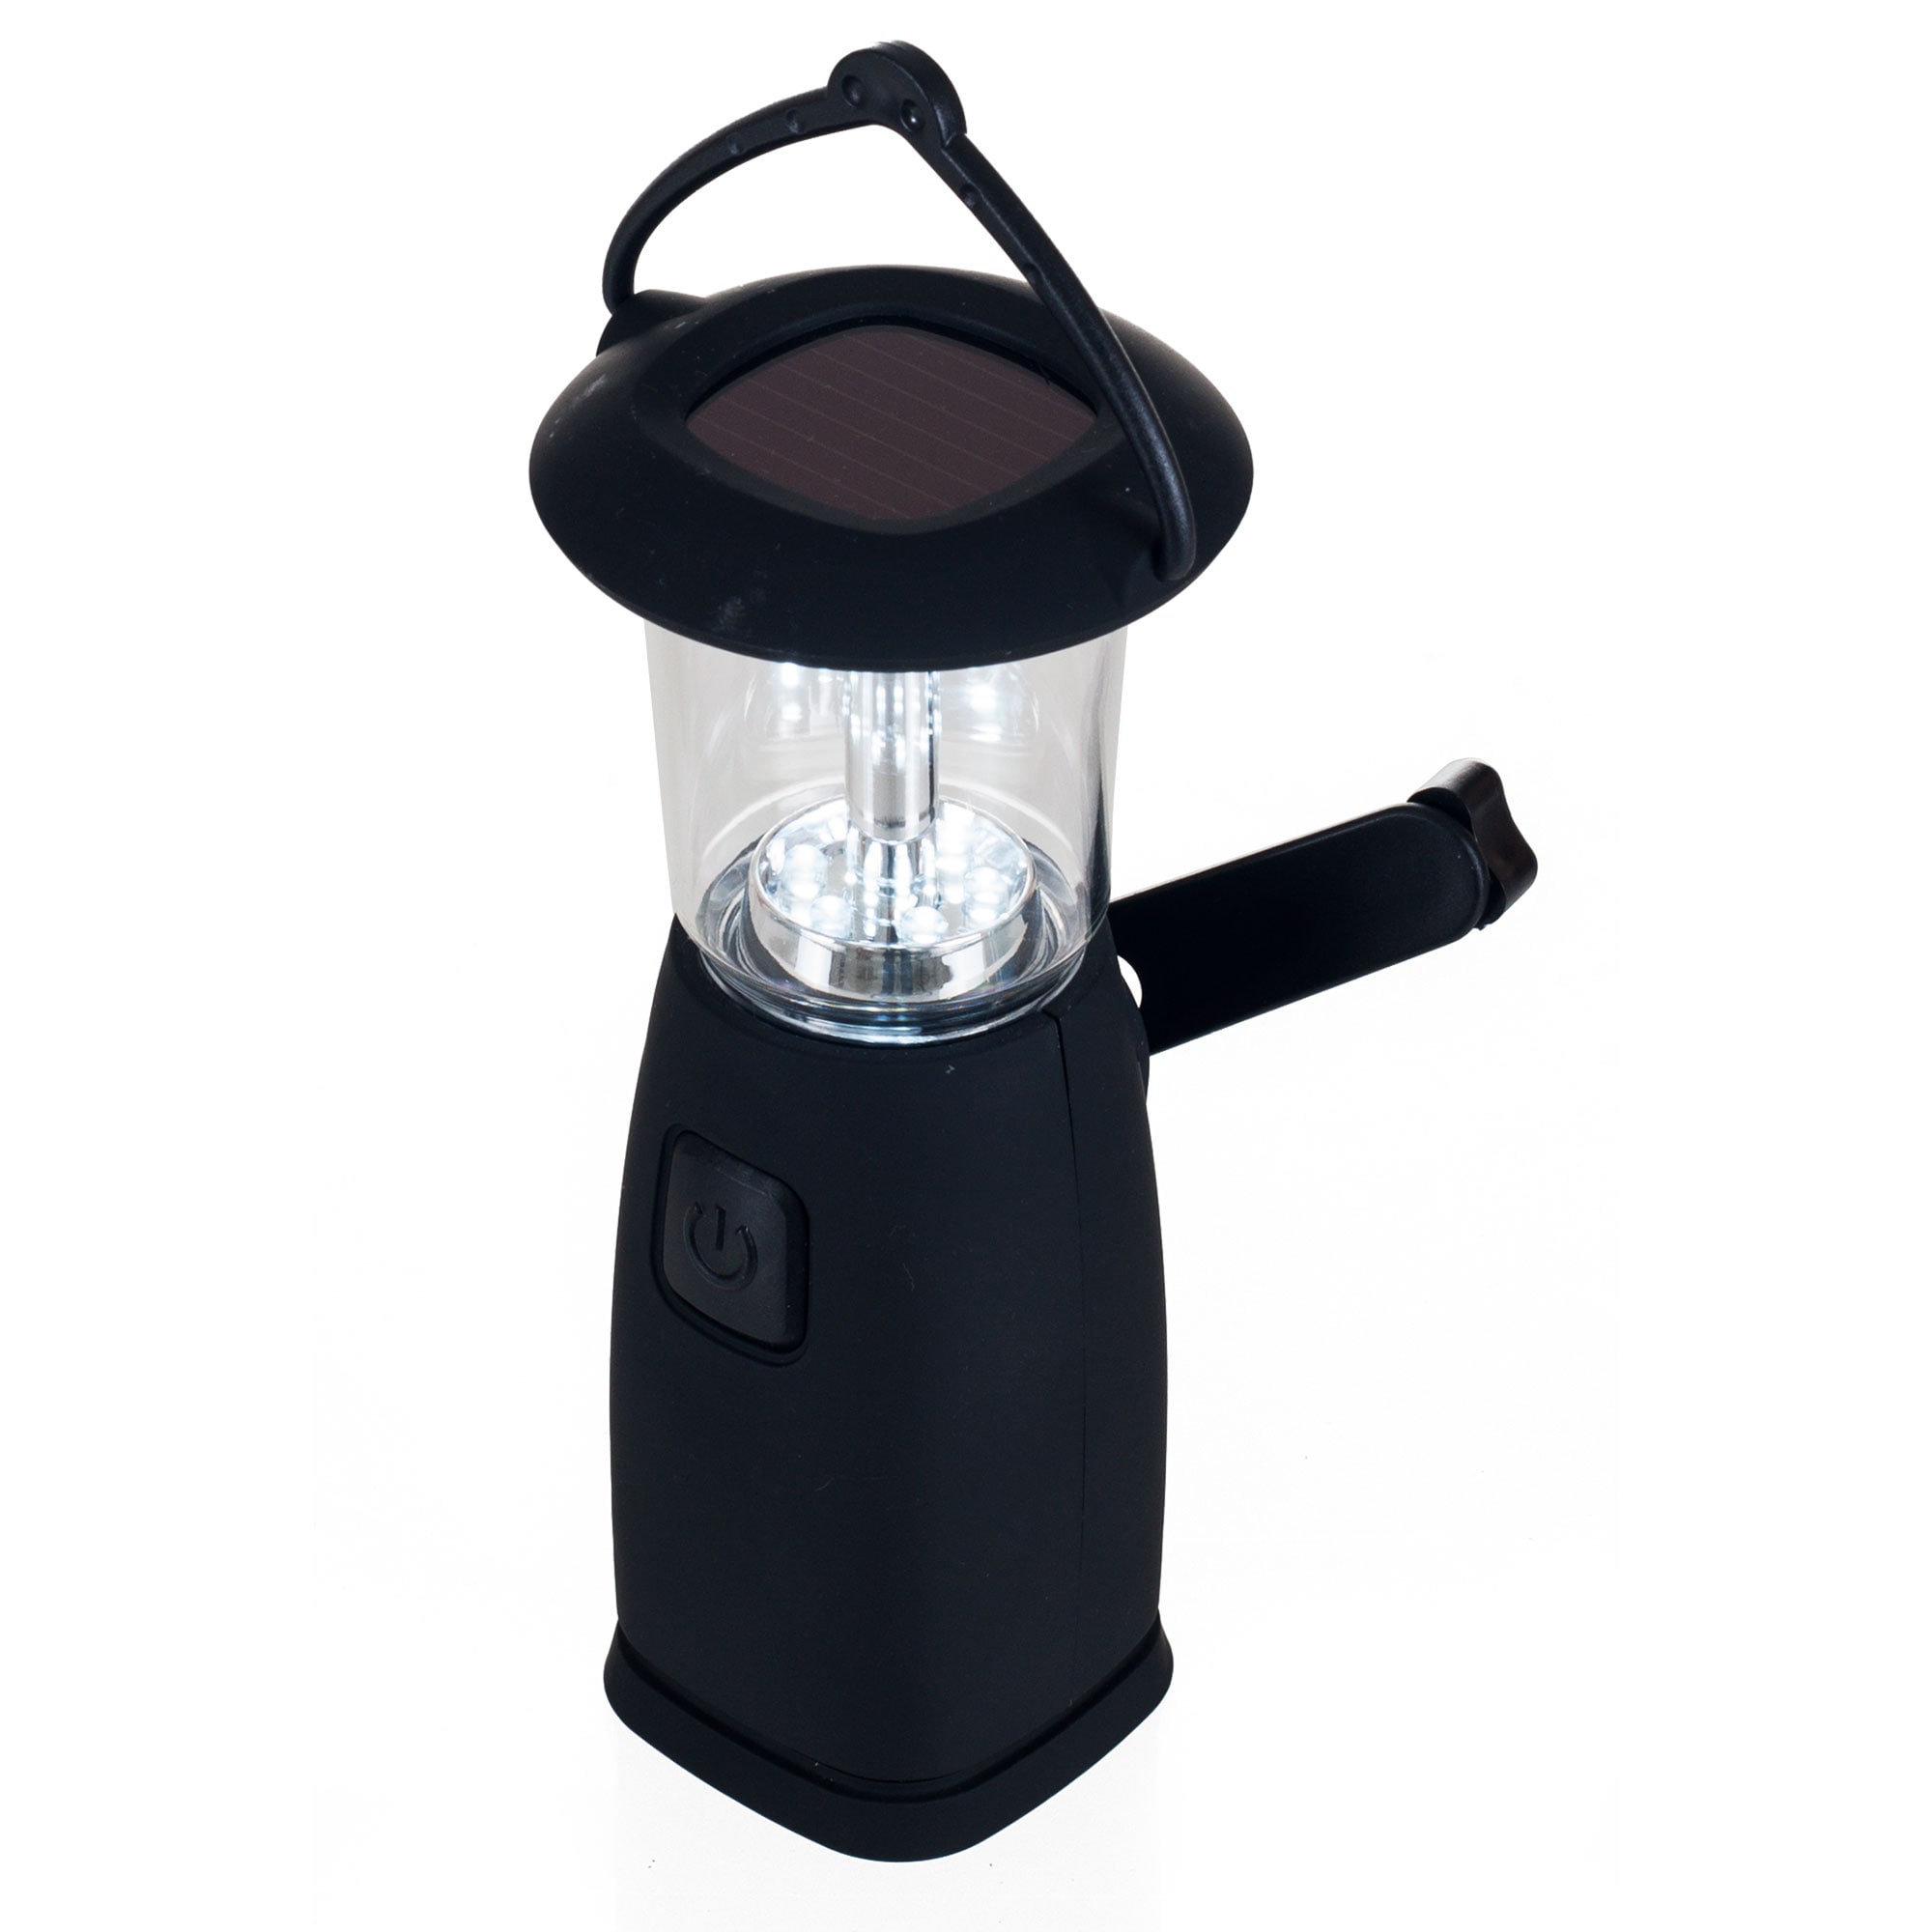 Fleming Supply Lanterns 1-Lumen LED Rechargeable Camping Lantern